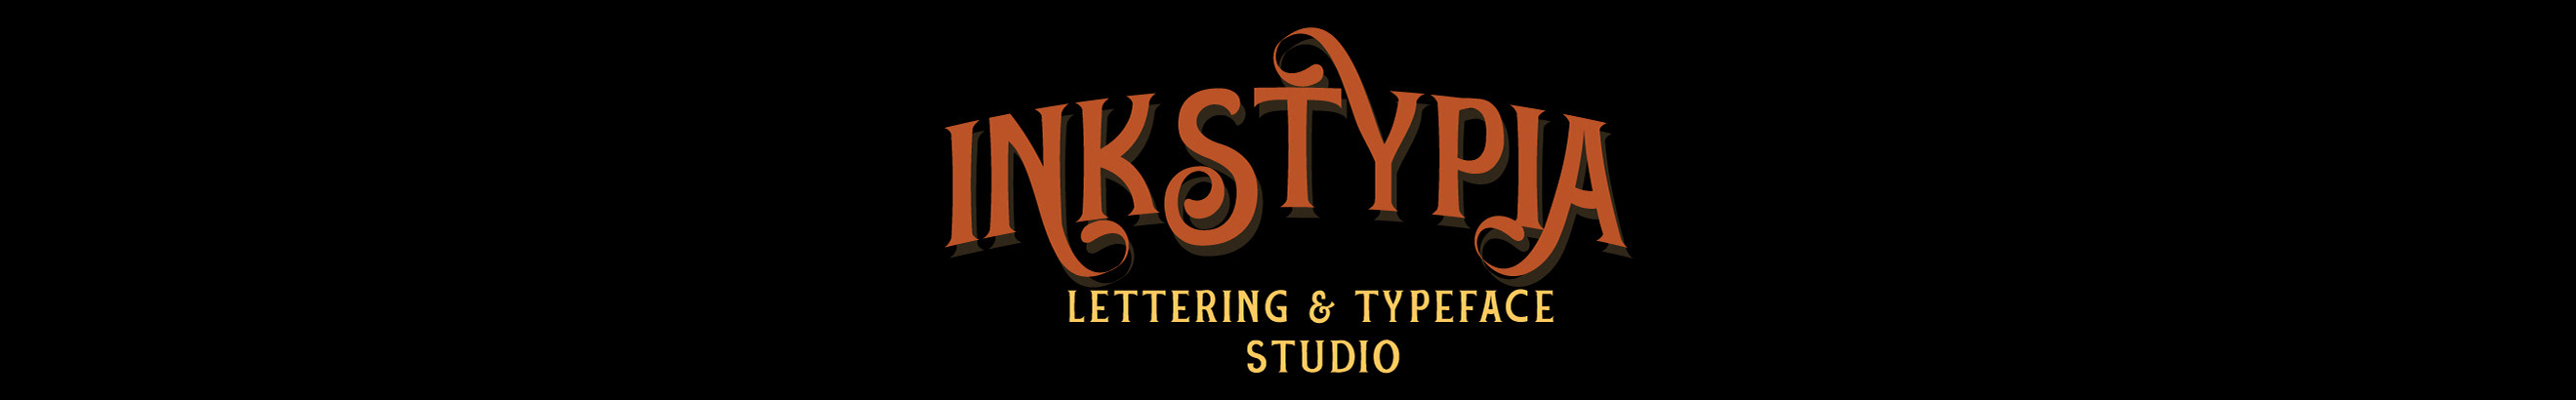 INKsTYPIA studio profil başlığı